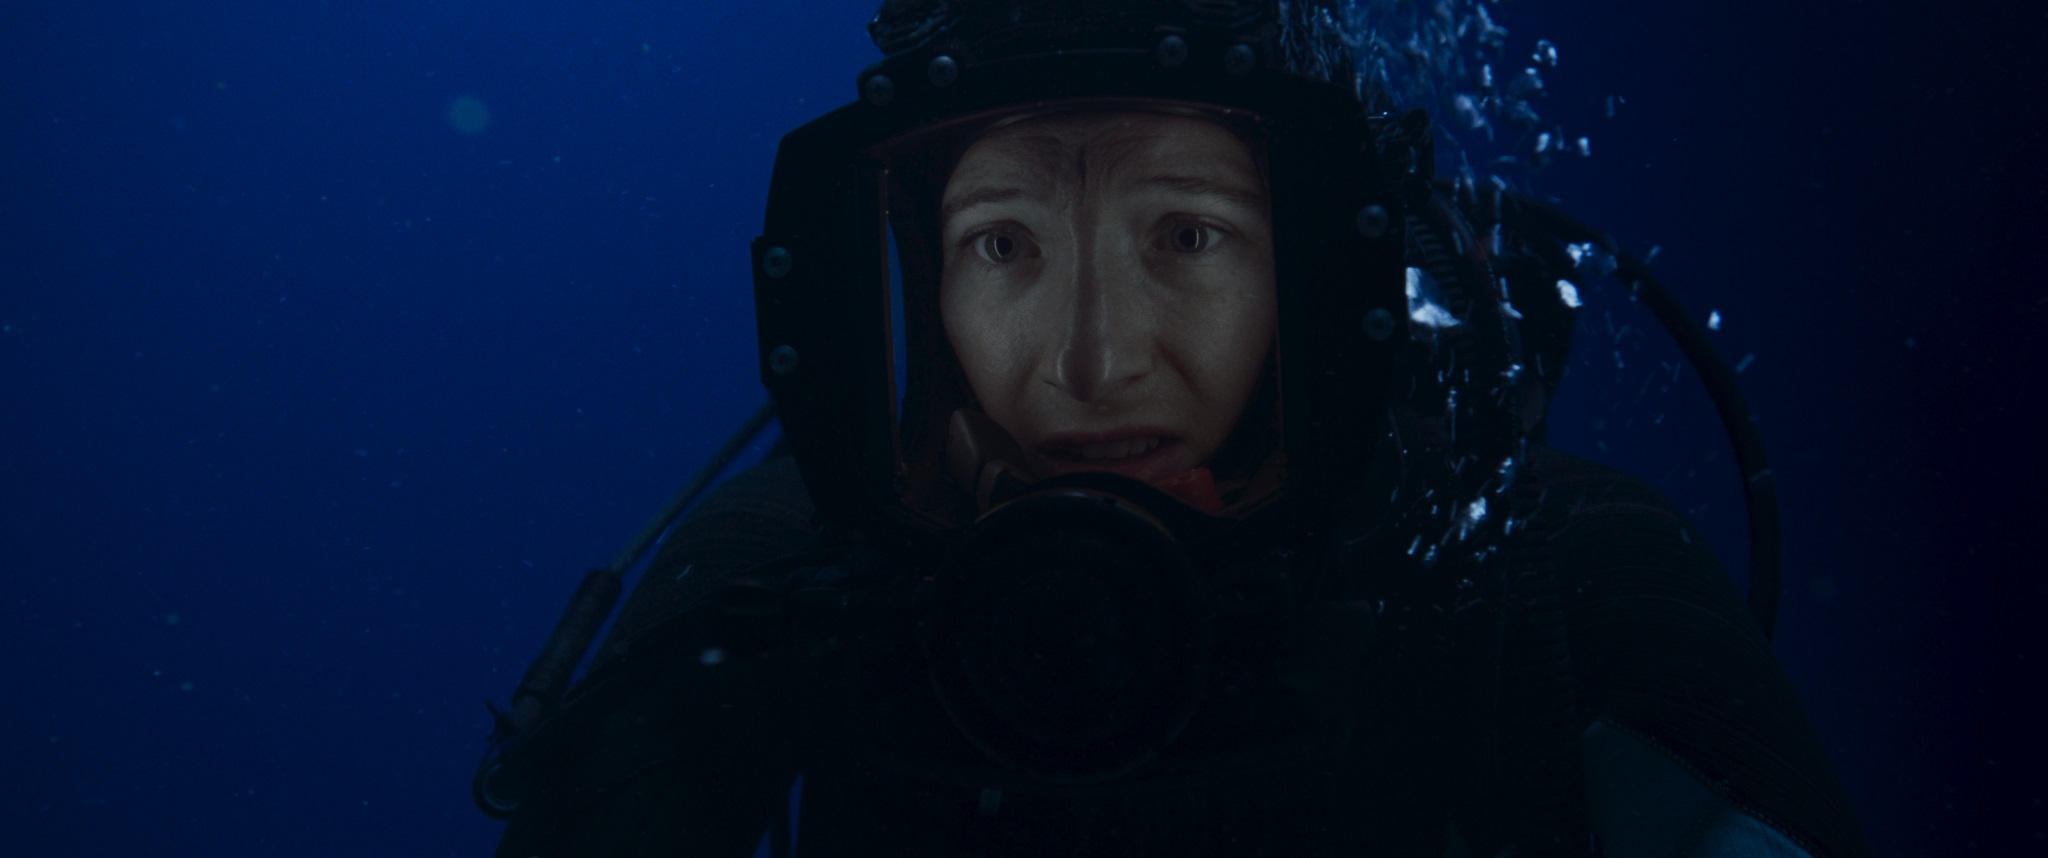 فیلم The Dive 2023 | شیرجه